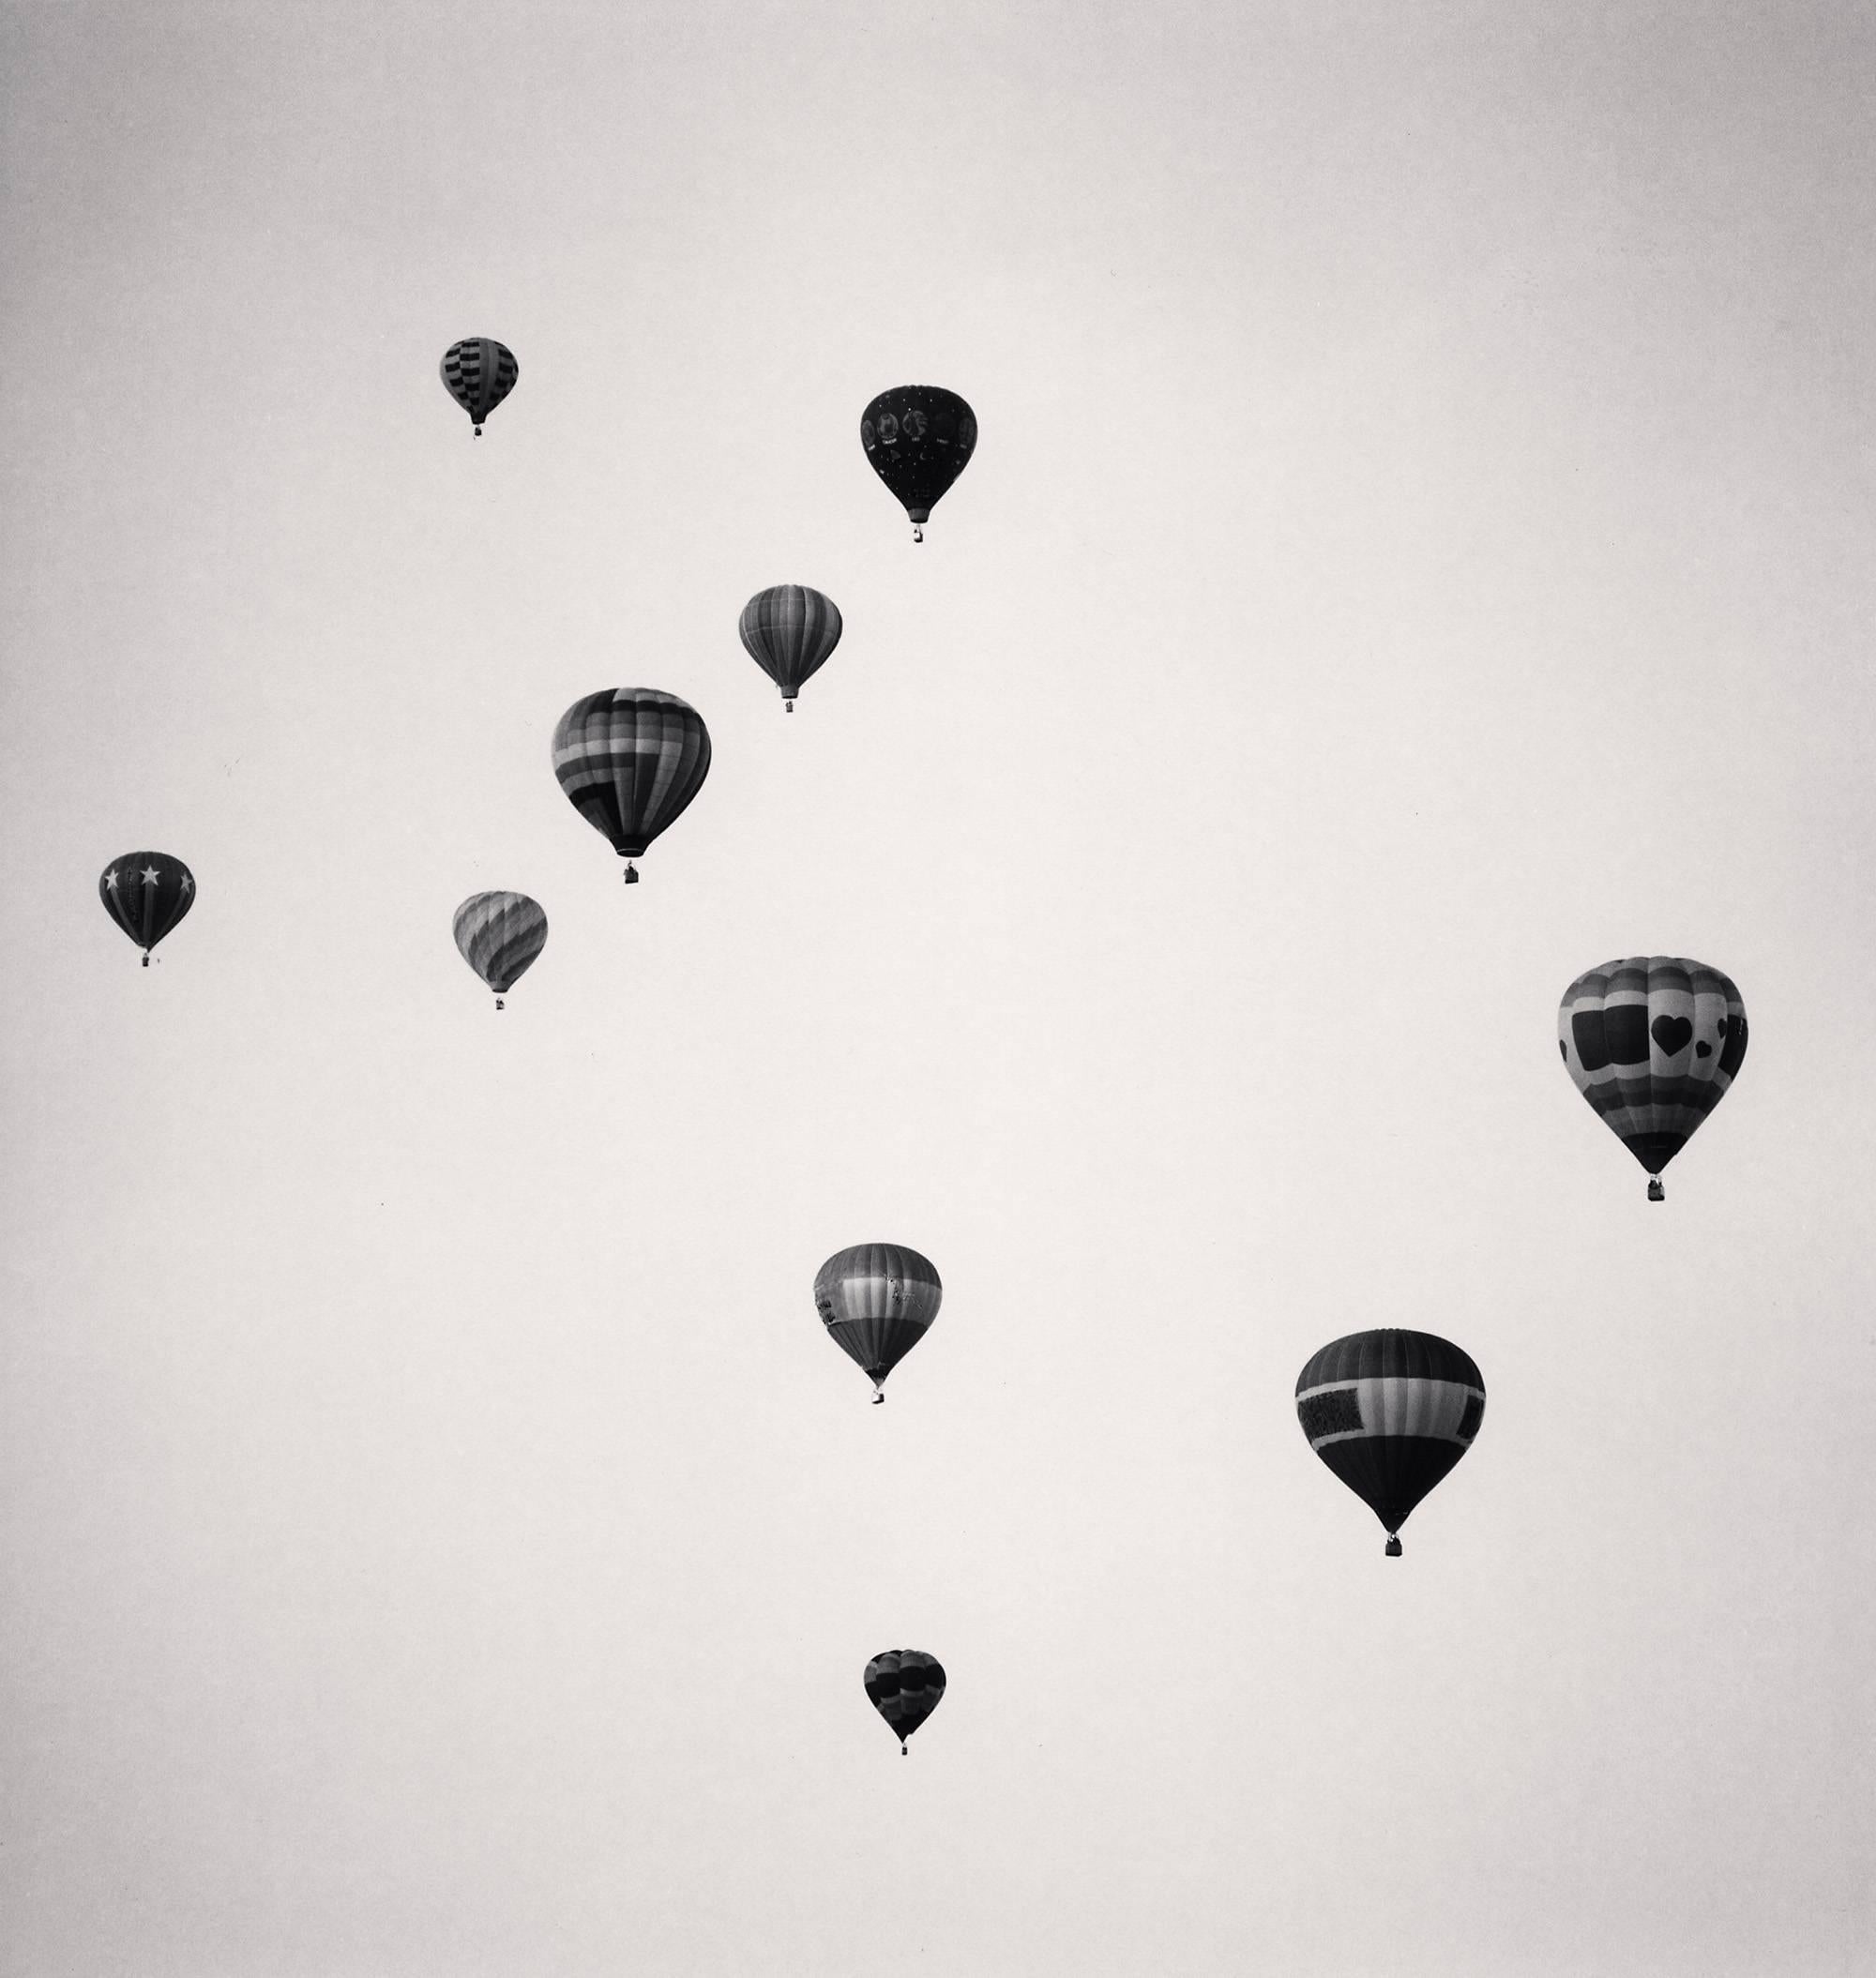 Michael Kenna Black and White Photograph - Ten Balloons, Albuquerque, New Mexico, USA